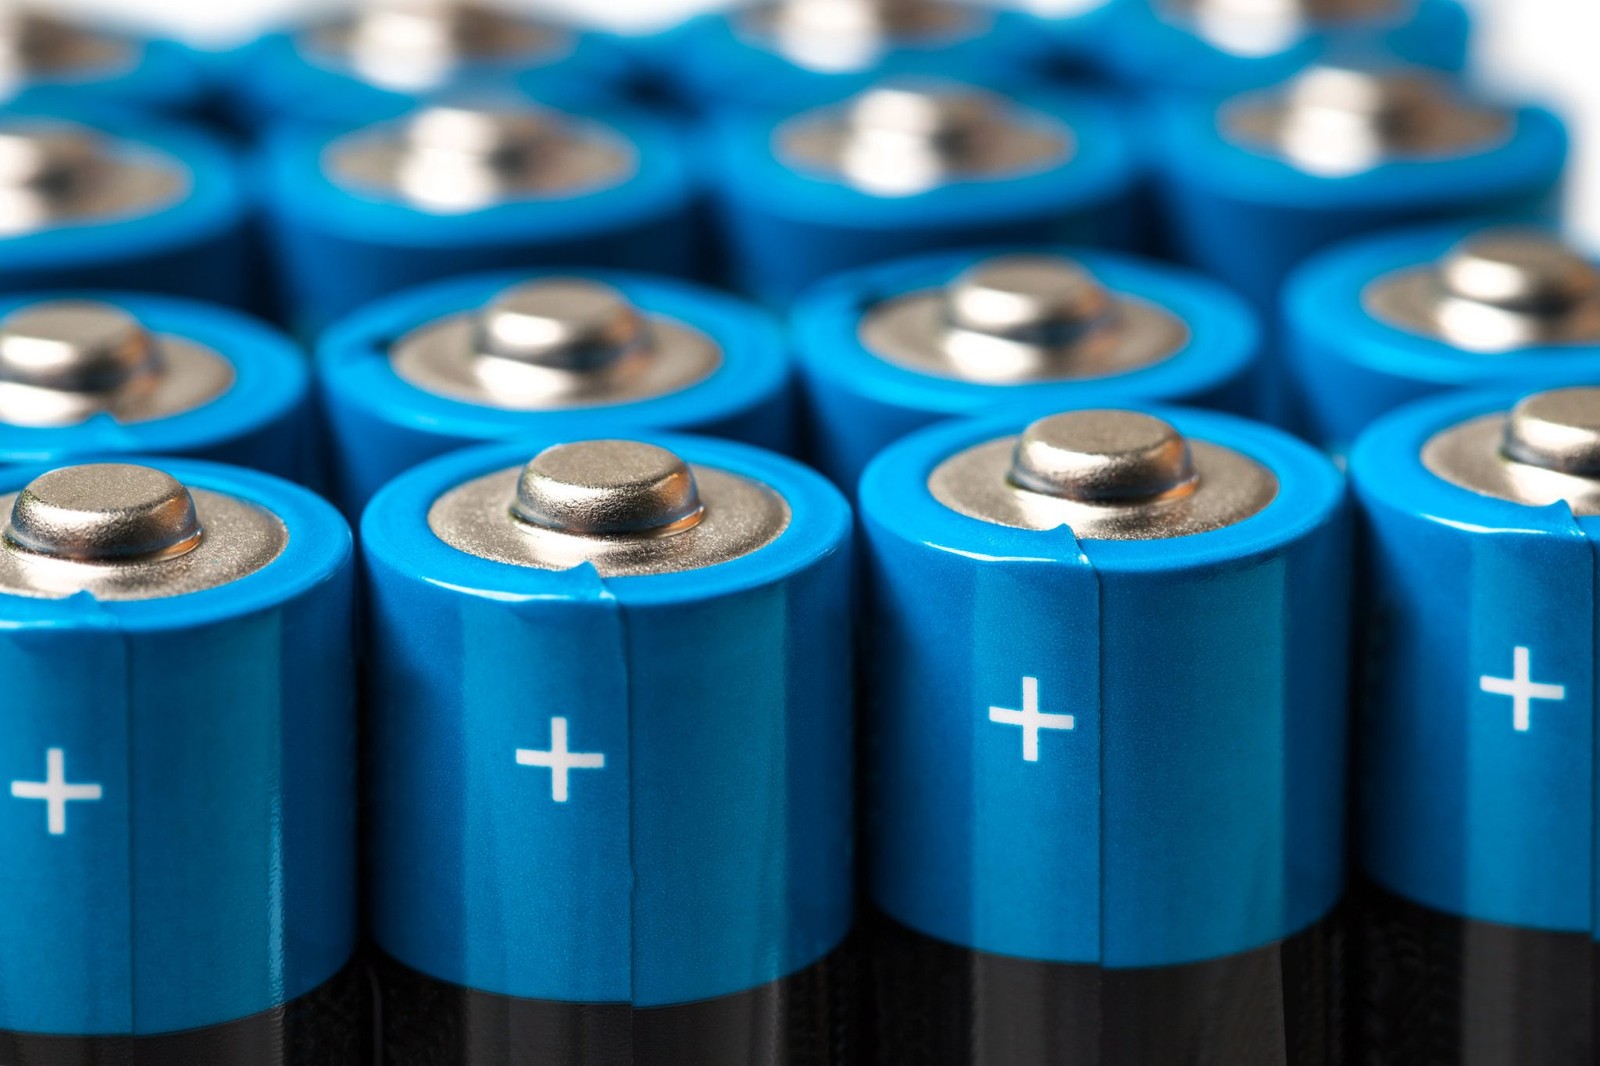 Szykuje się rewolucja w świecie baterii
